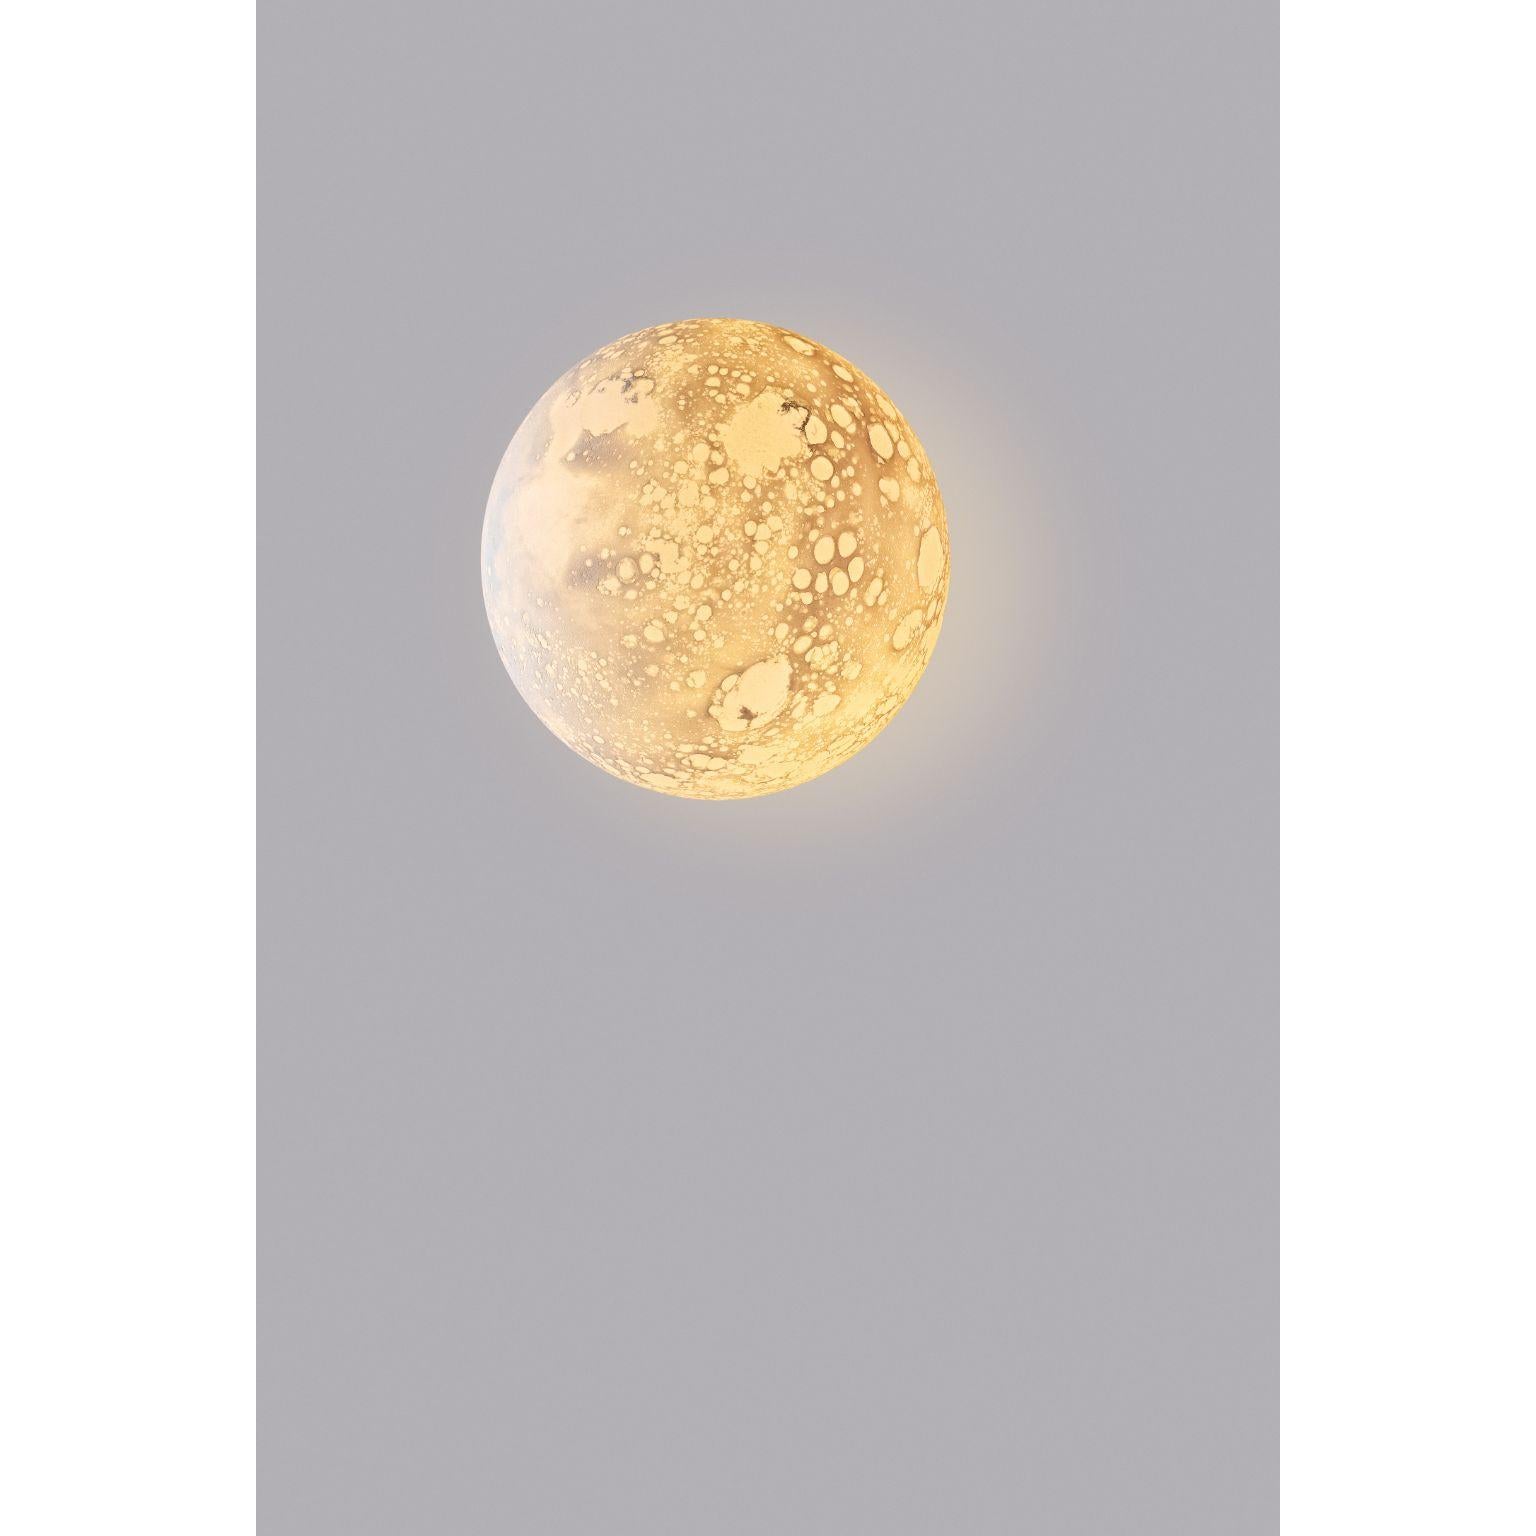 Applique lunaire de Ludovic Clément d'Armont
Matériaux : Verre soufflé, sculpté par Ludovic Clément d'Armont
Dimensions : 25x25x25 cm

Toutes nos lampes peuvent être câblées en fonction de chaque pays. Si elle est vendue aux États-Unis, elle sera